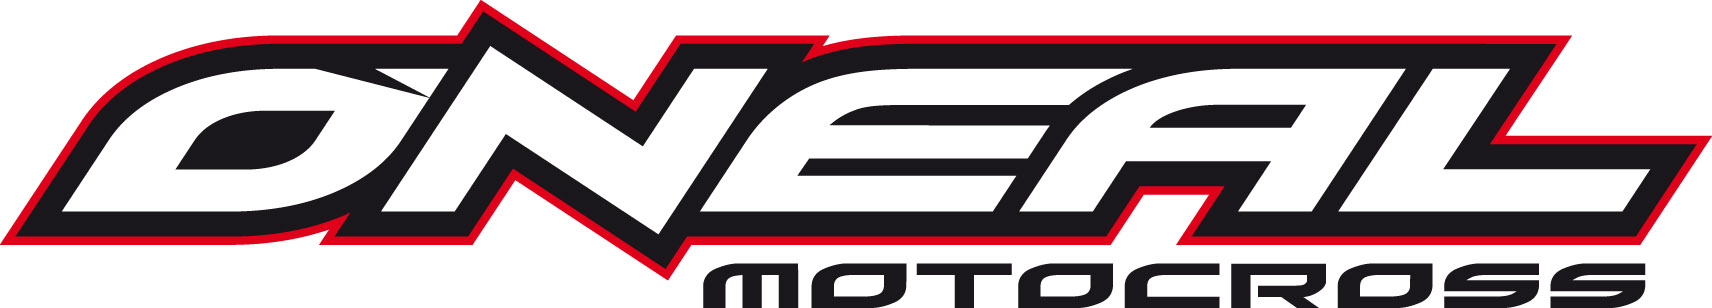 ONeal Motocross Logo, image, download logo | LogoWiki.net